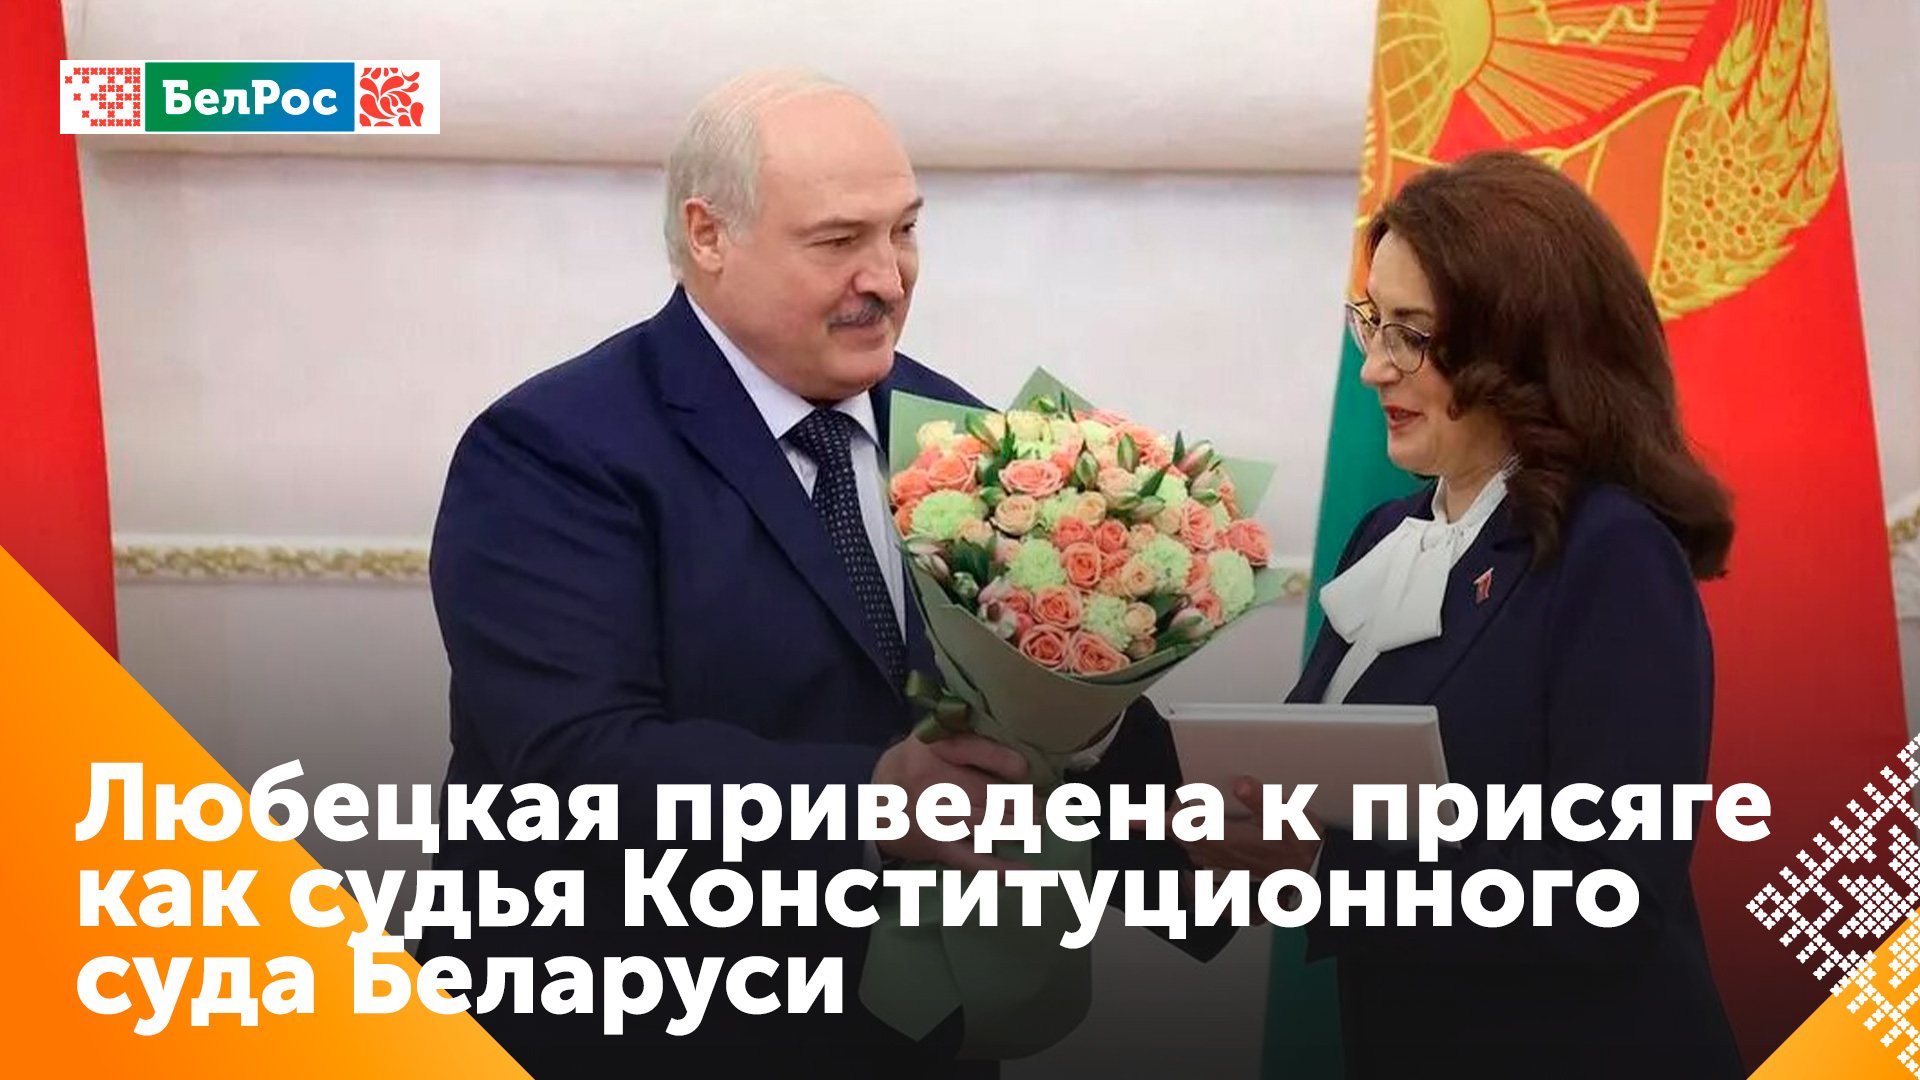 Лукашенко привёл к присяге судью Конституционного Суда Беларуси Светлану Любецкую